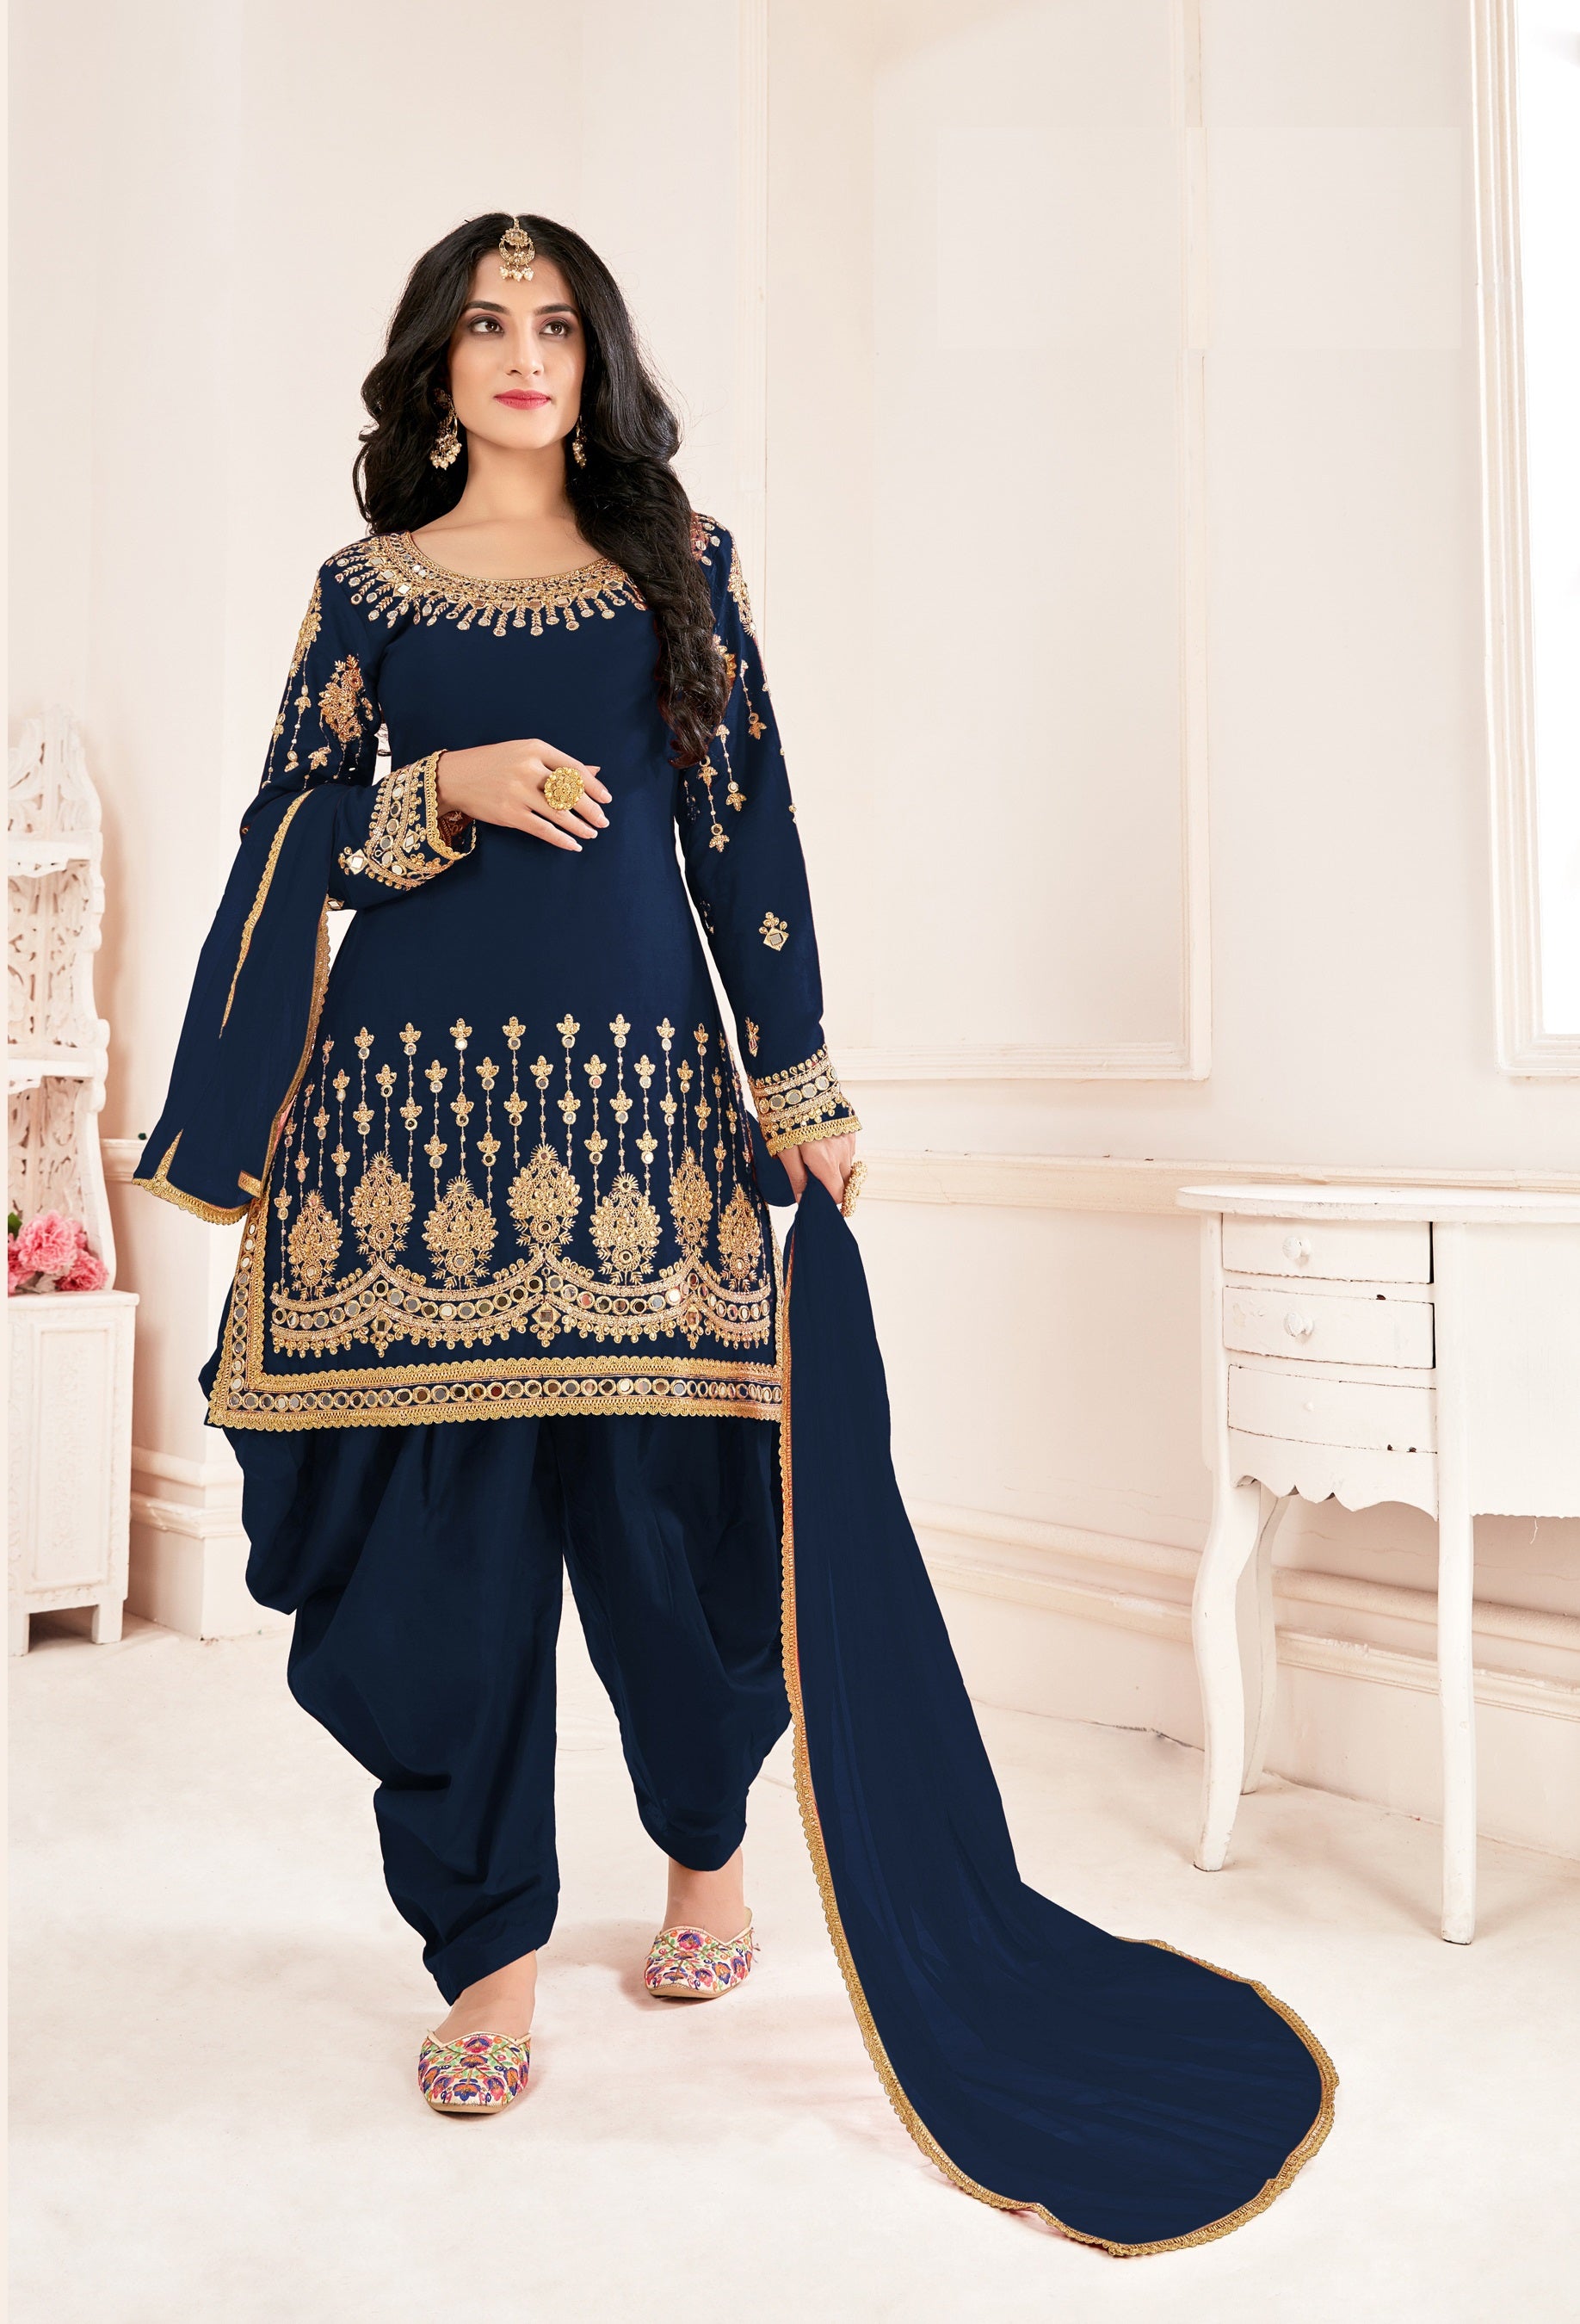 50 Latest Blue Salwar Suit Designs (2022) - Tips and Beauty | Модные стили,  Индийские платья, Наряды